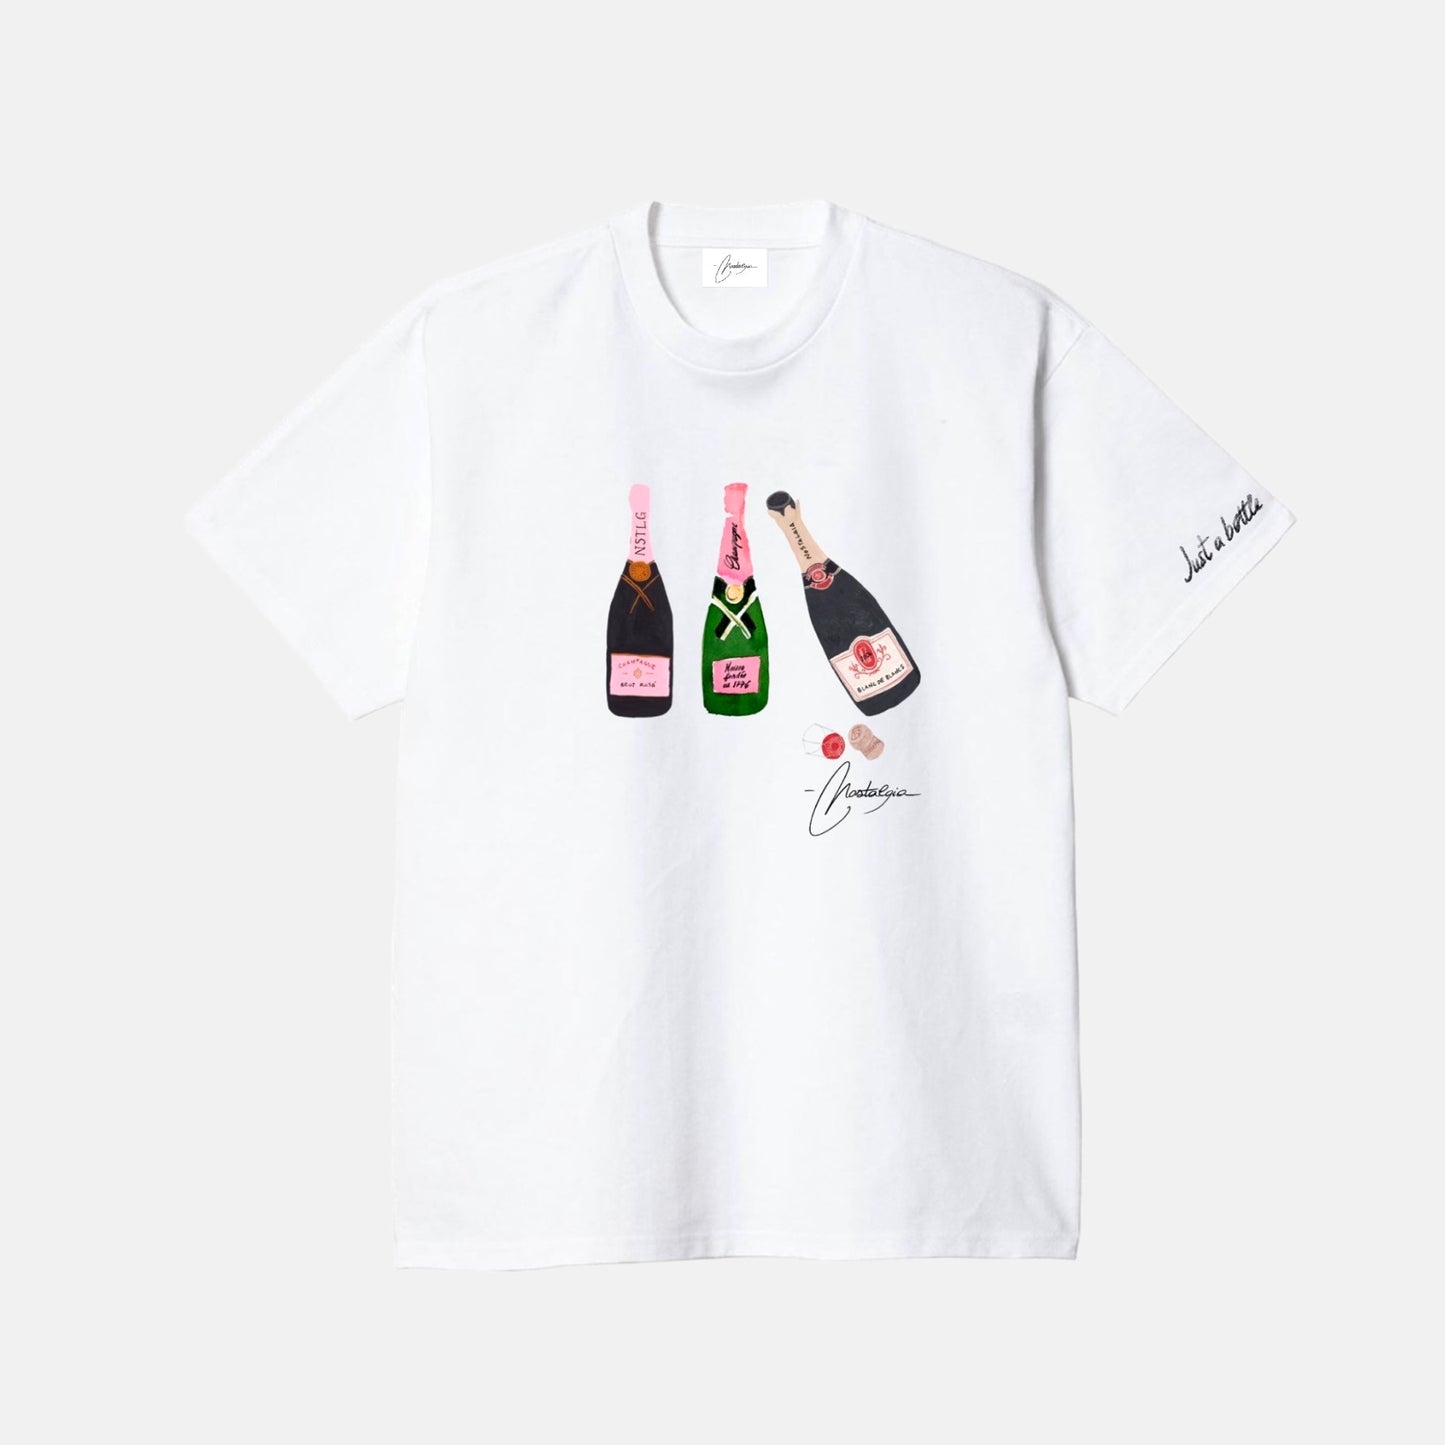 Nostalgia Champagne T-shirt